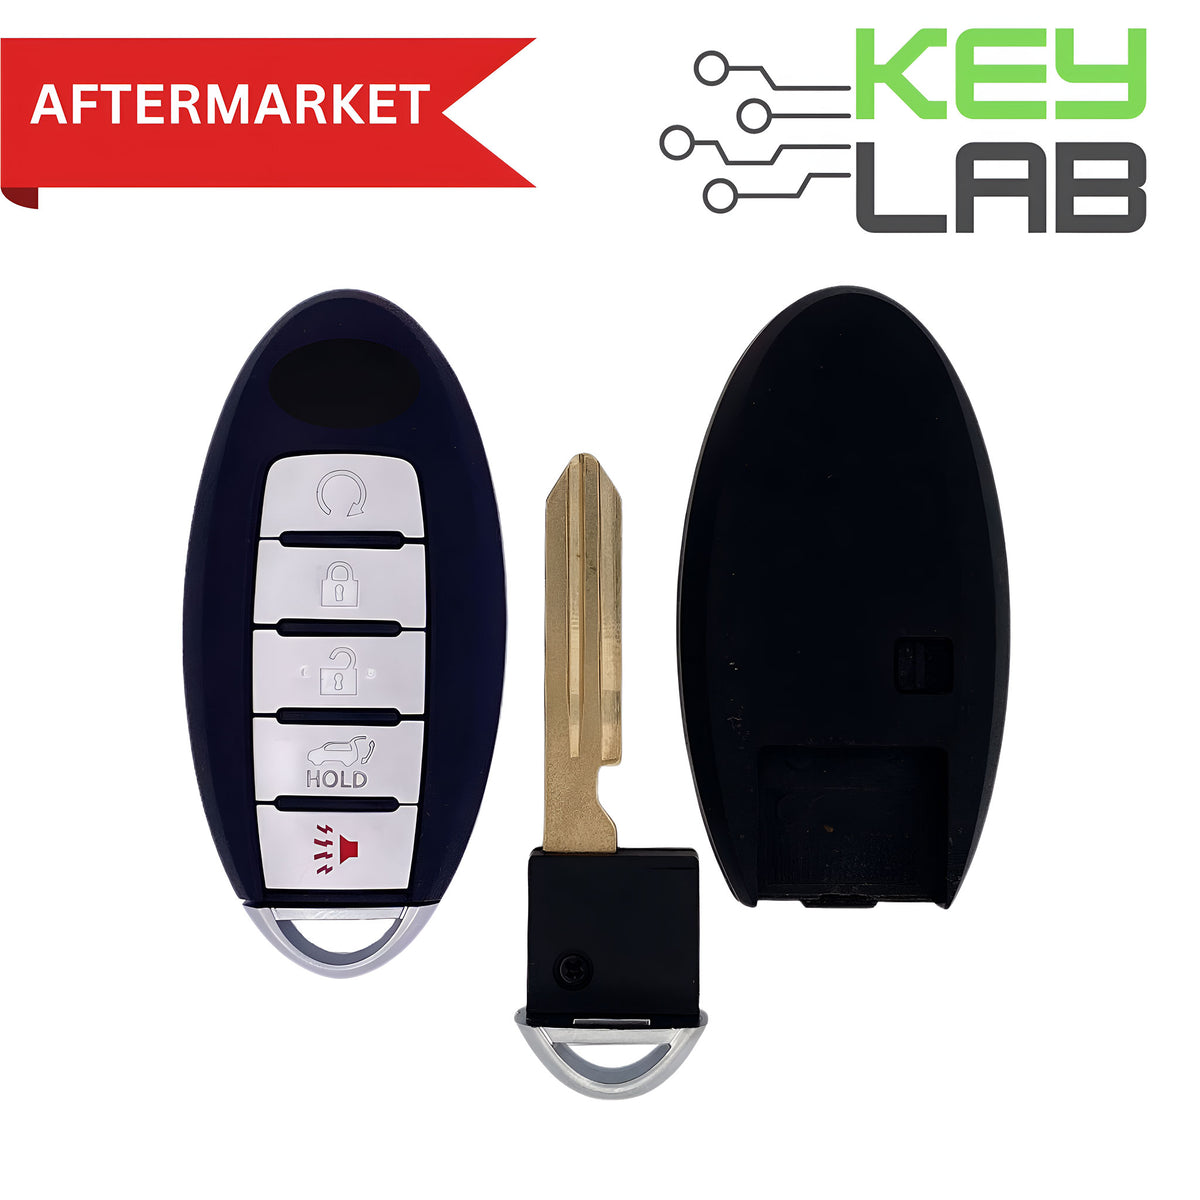 Nissan Aftermarket 2017-2018 Armada Smart Key 5B Remote Start/Hatch FCCID: CWTWB1G744 PN# 285E3-1LB5A - Royal Key Supply